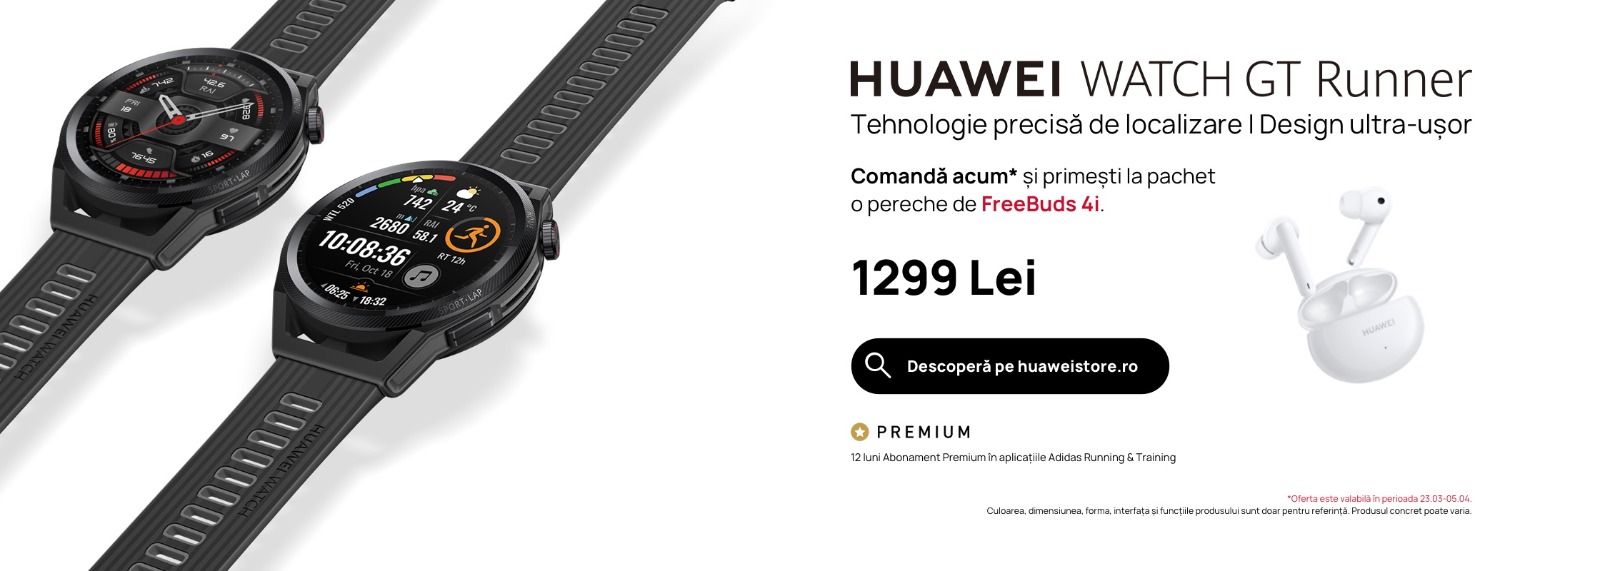 Huawei lansează primul ceas profesional pentru pasionații de sport